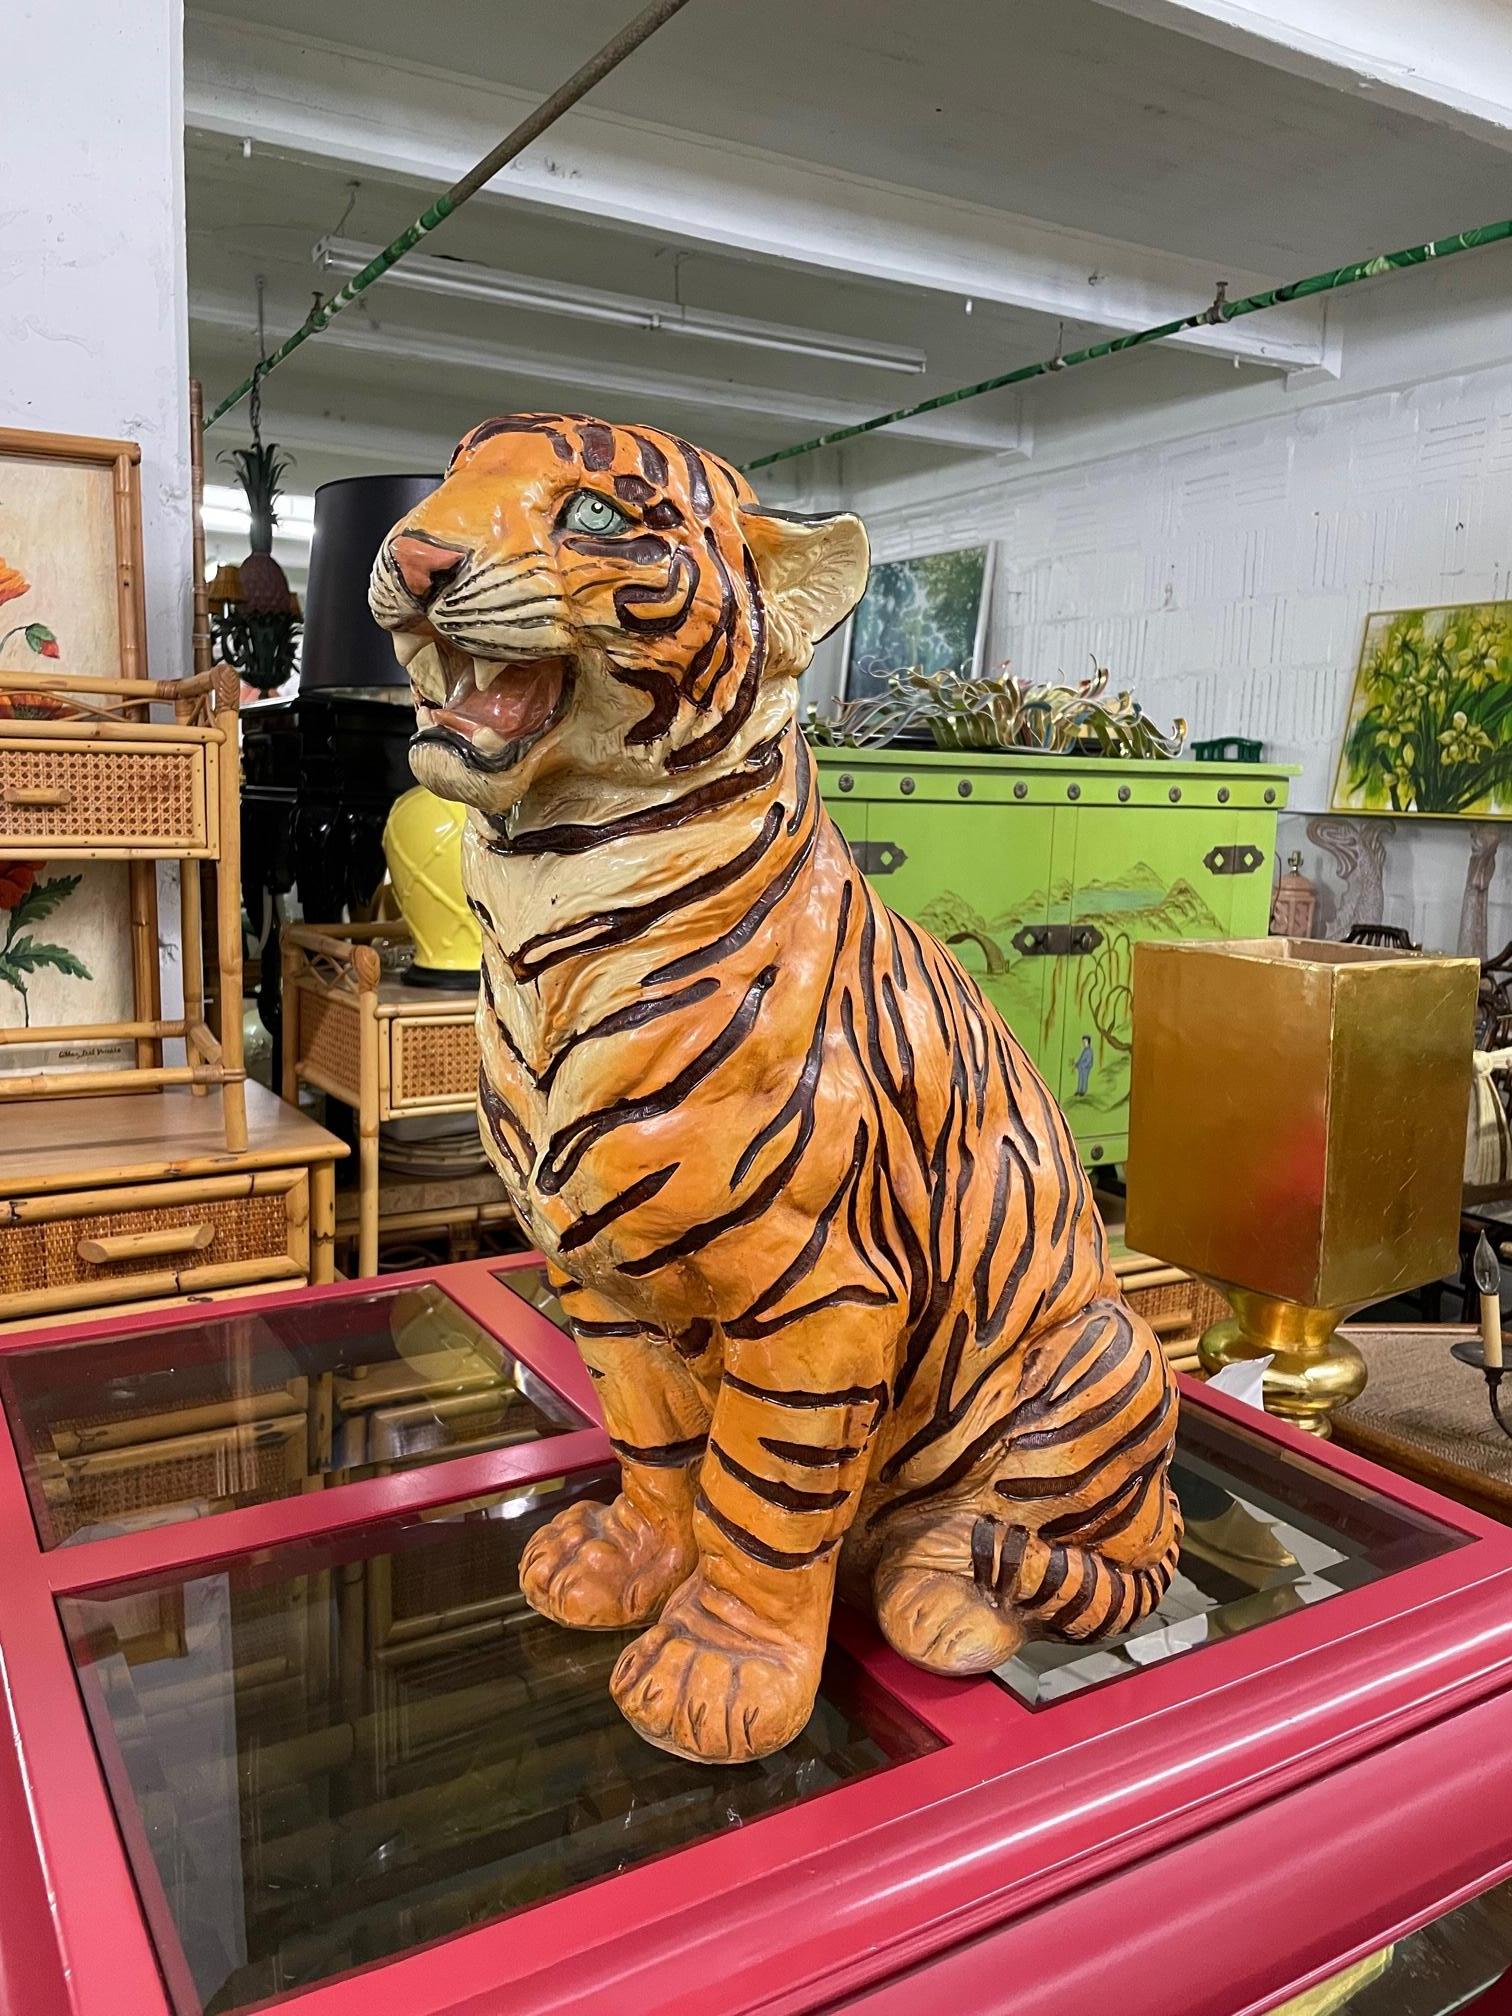 Vintage tiger statue stands 26